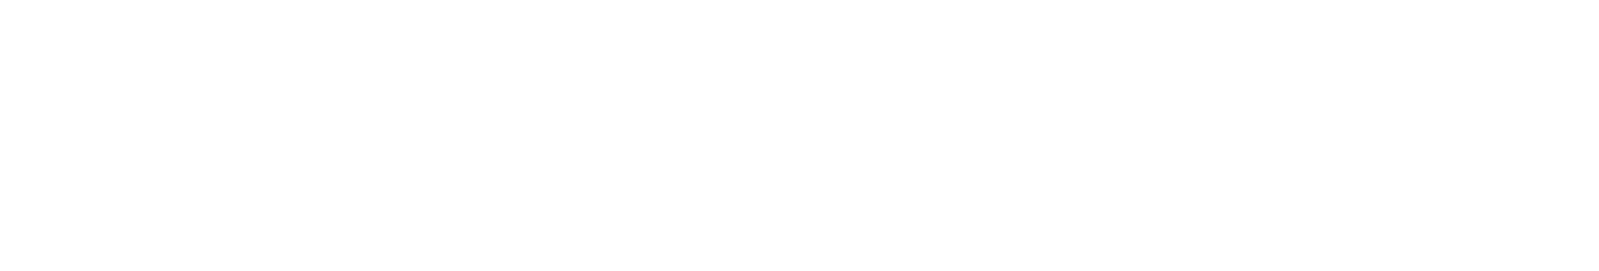 National Presto Industries
 Logo groß für dunkle Hintergründe (transparentes PNG)